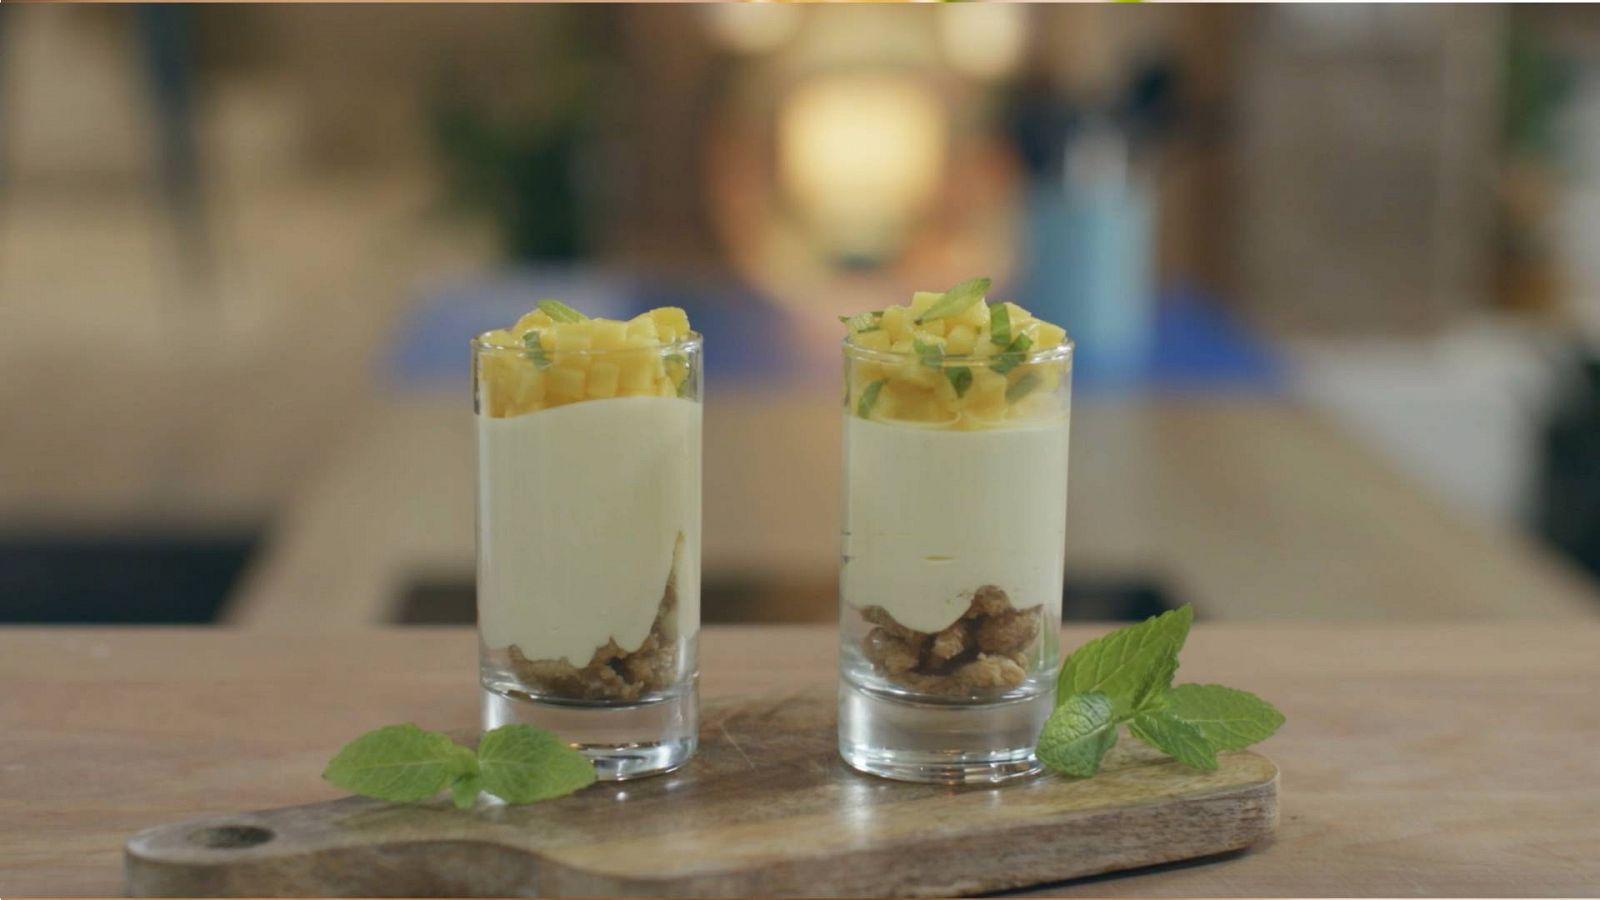 Menudos Torres - Receta de mousse de mango, yogur y menta con crumble